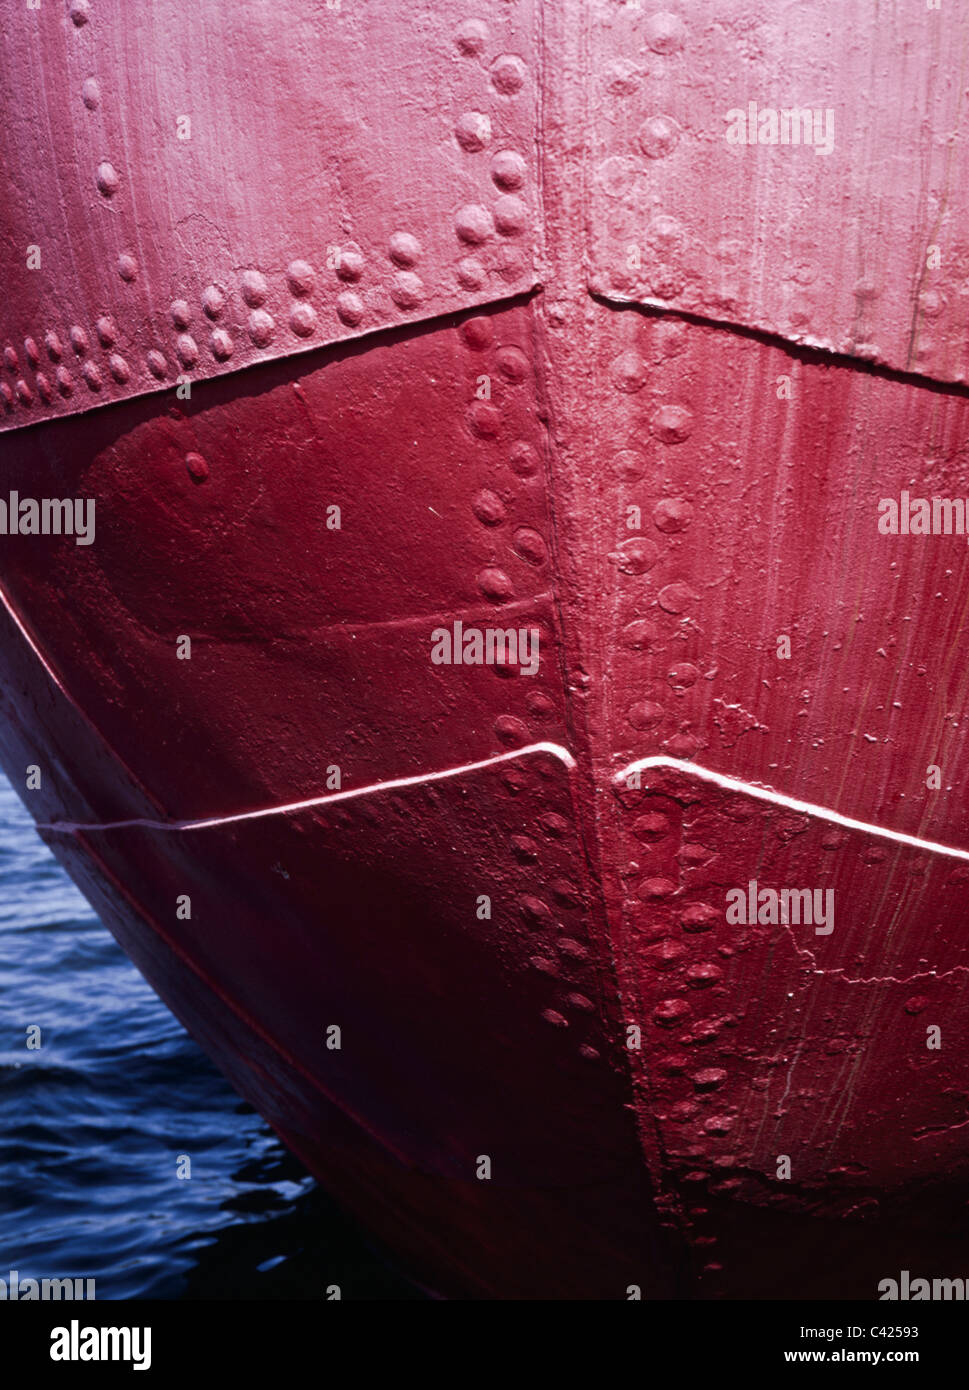 Rivettata scafo di nave, con i rivetti chiaramente visibile Foto Stock